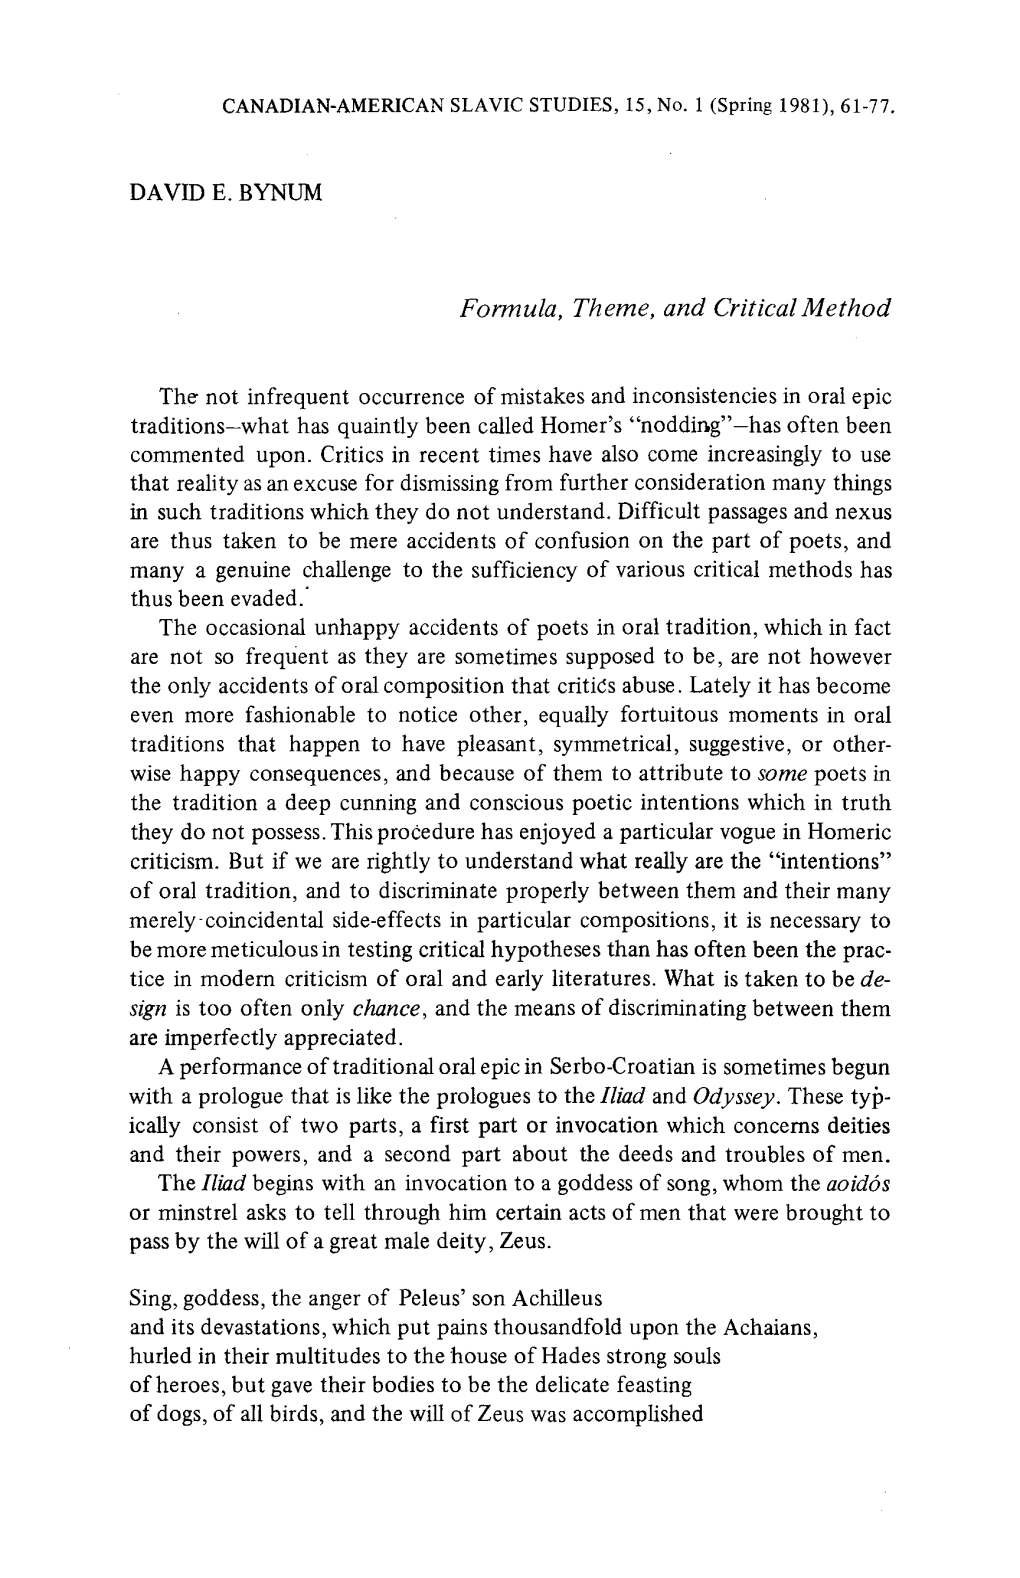 DAVID E. BYNUM Formula, Theme, and Critical Method